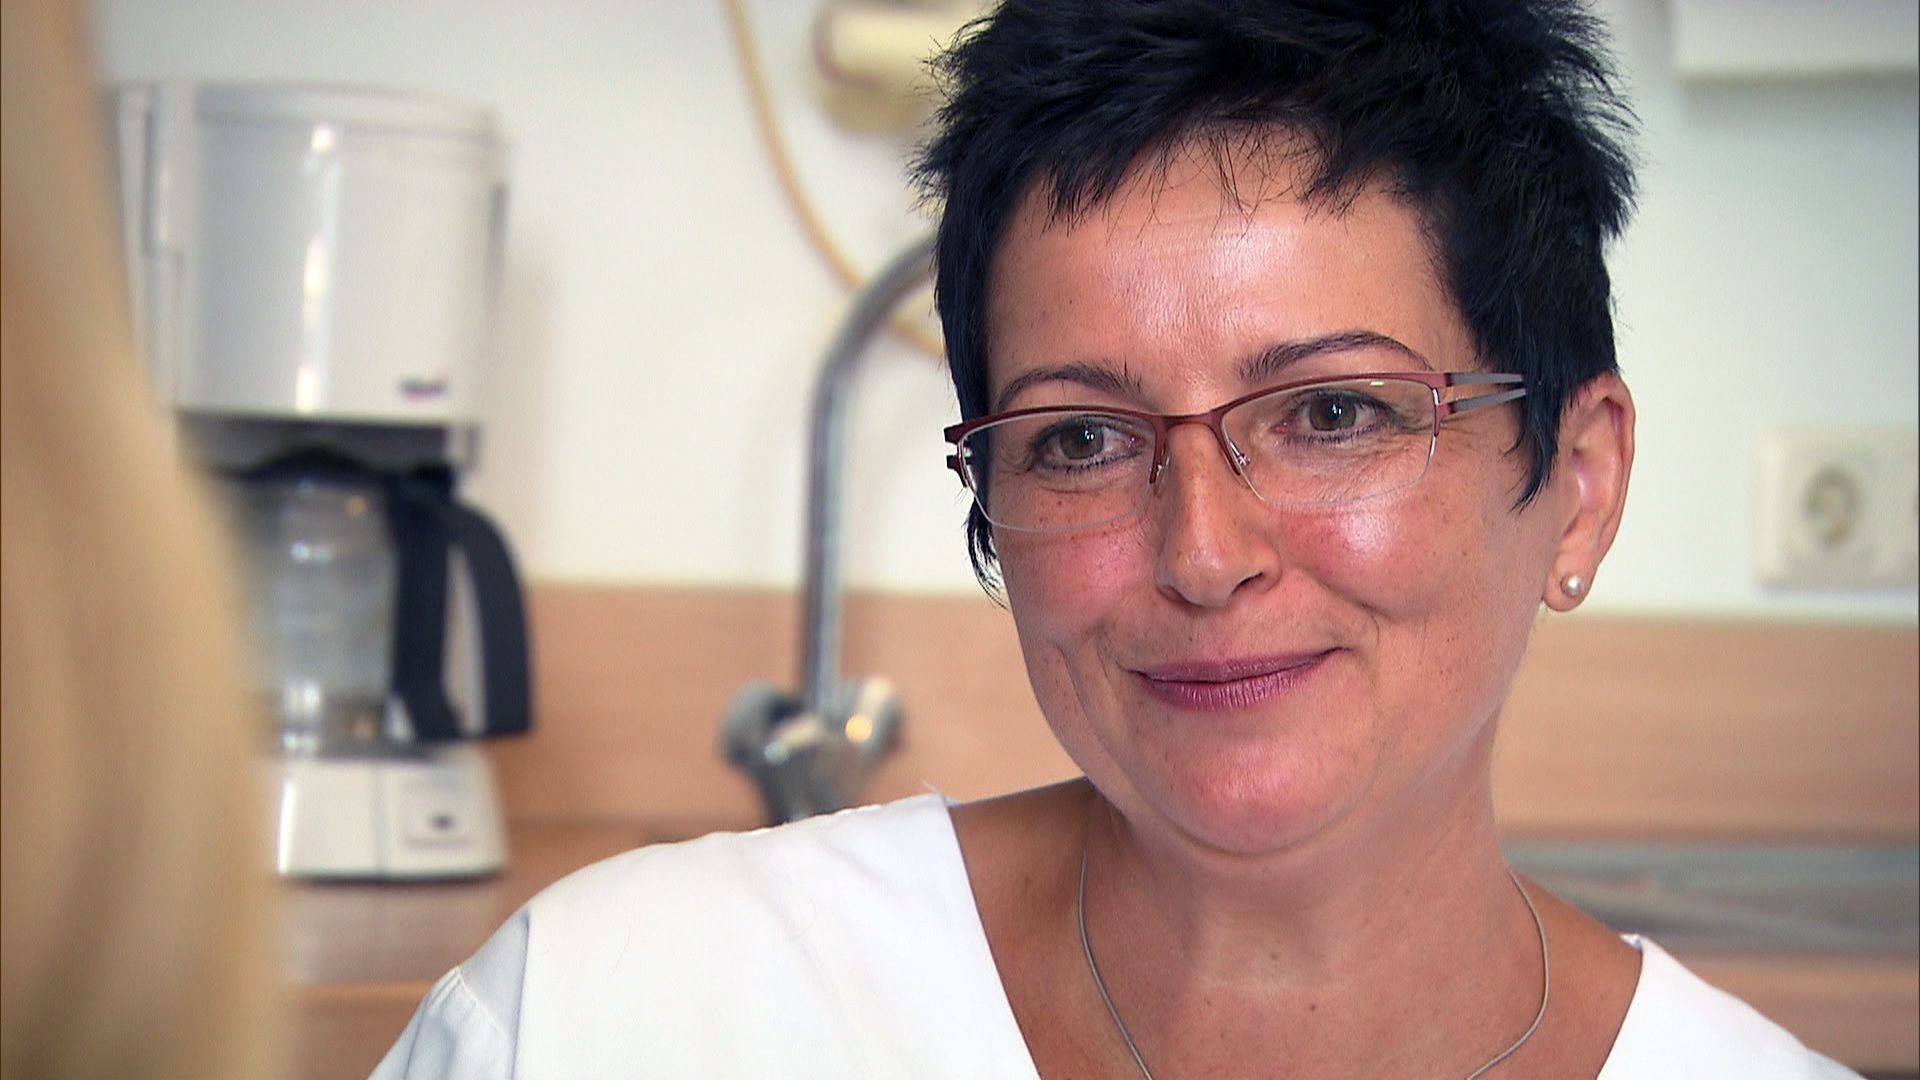 Krankenschwester Ulrike möchte ihren ehemaligen Pflegling wiedersehen